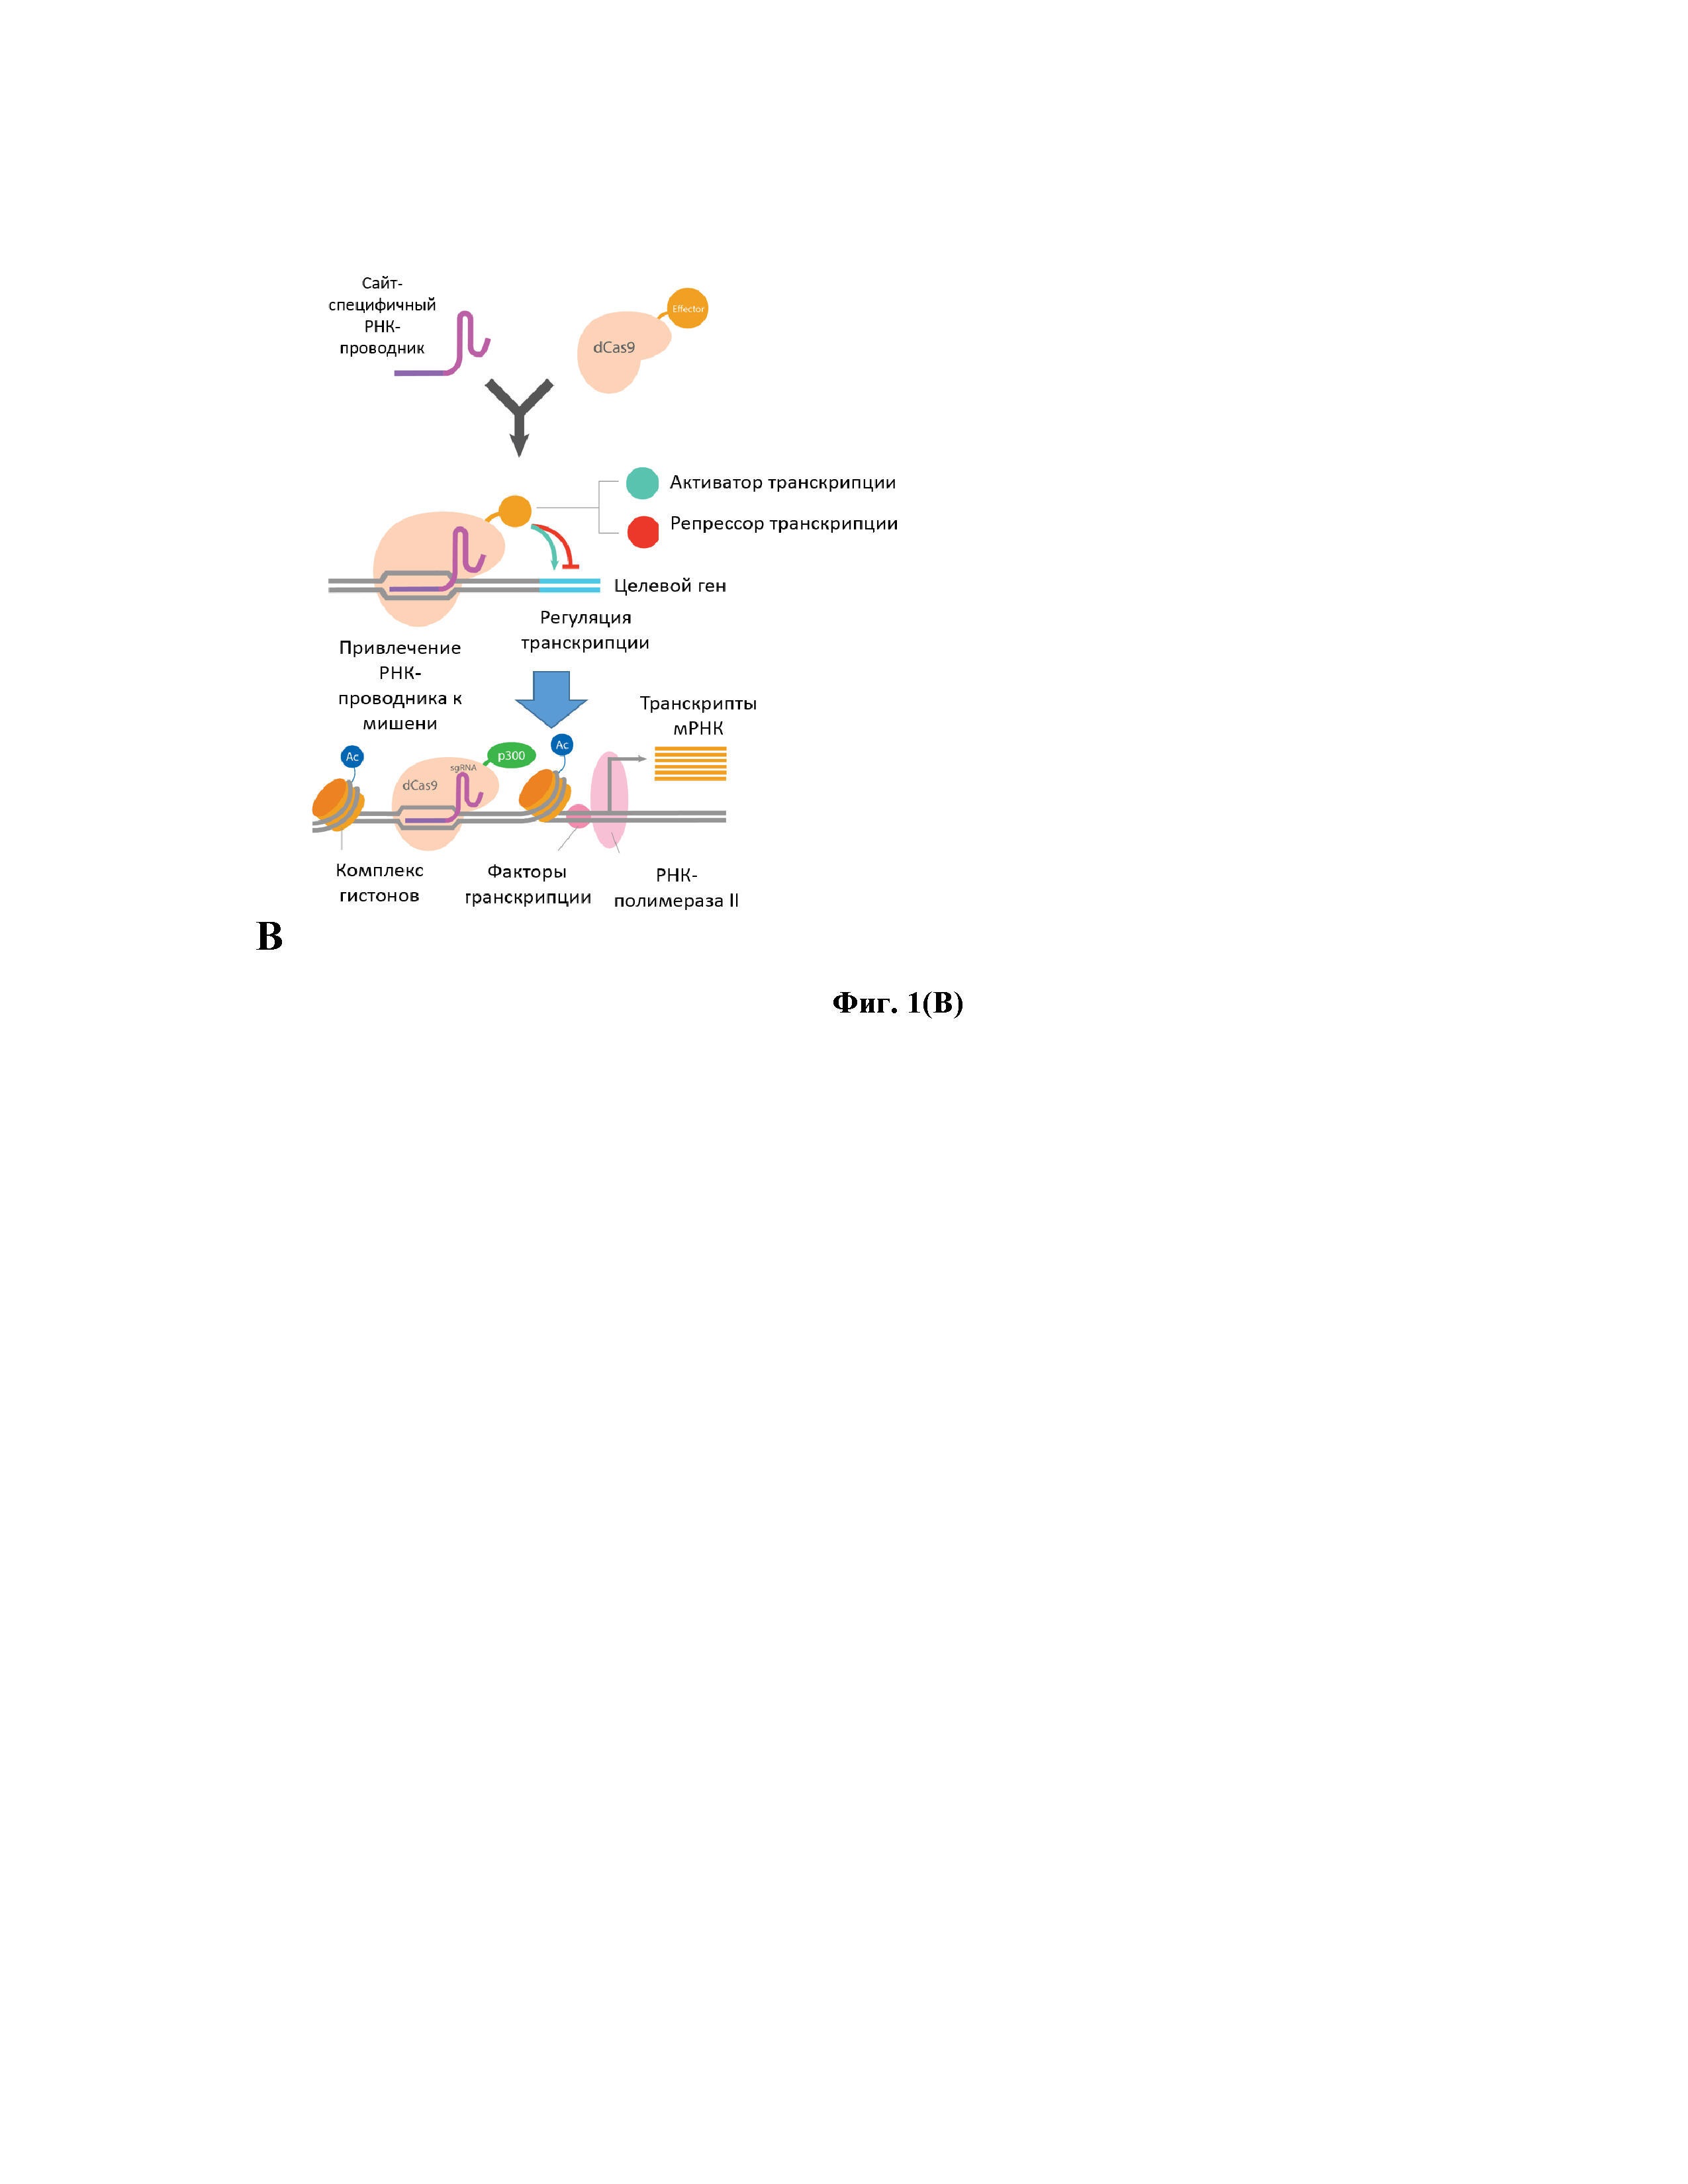 Система для активации цитидиндезаминаз APOBEC/AID человека и/или урацил-ДНК-гликозилазы UNG человека и ее применение для элиминации ккз ДНК вируса гепатита B из клеток человека, в частности из гепатоцитов